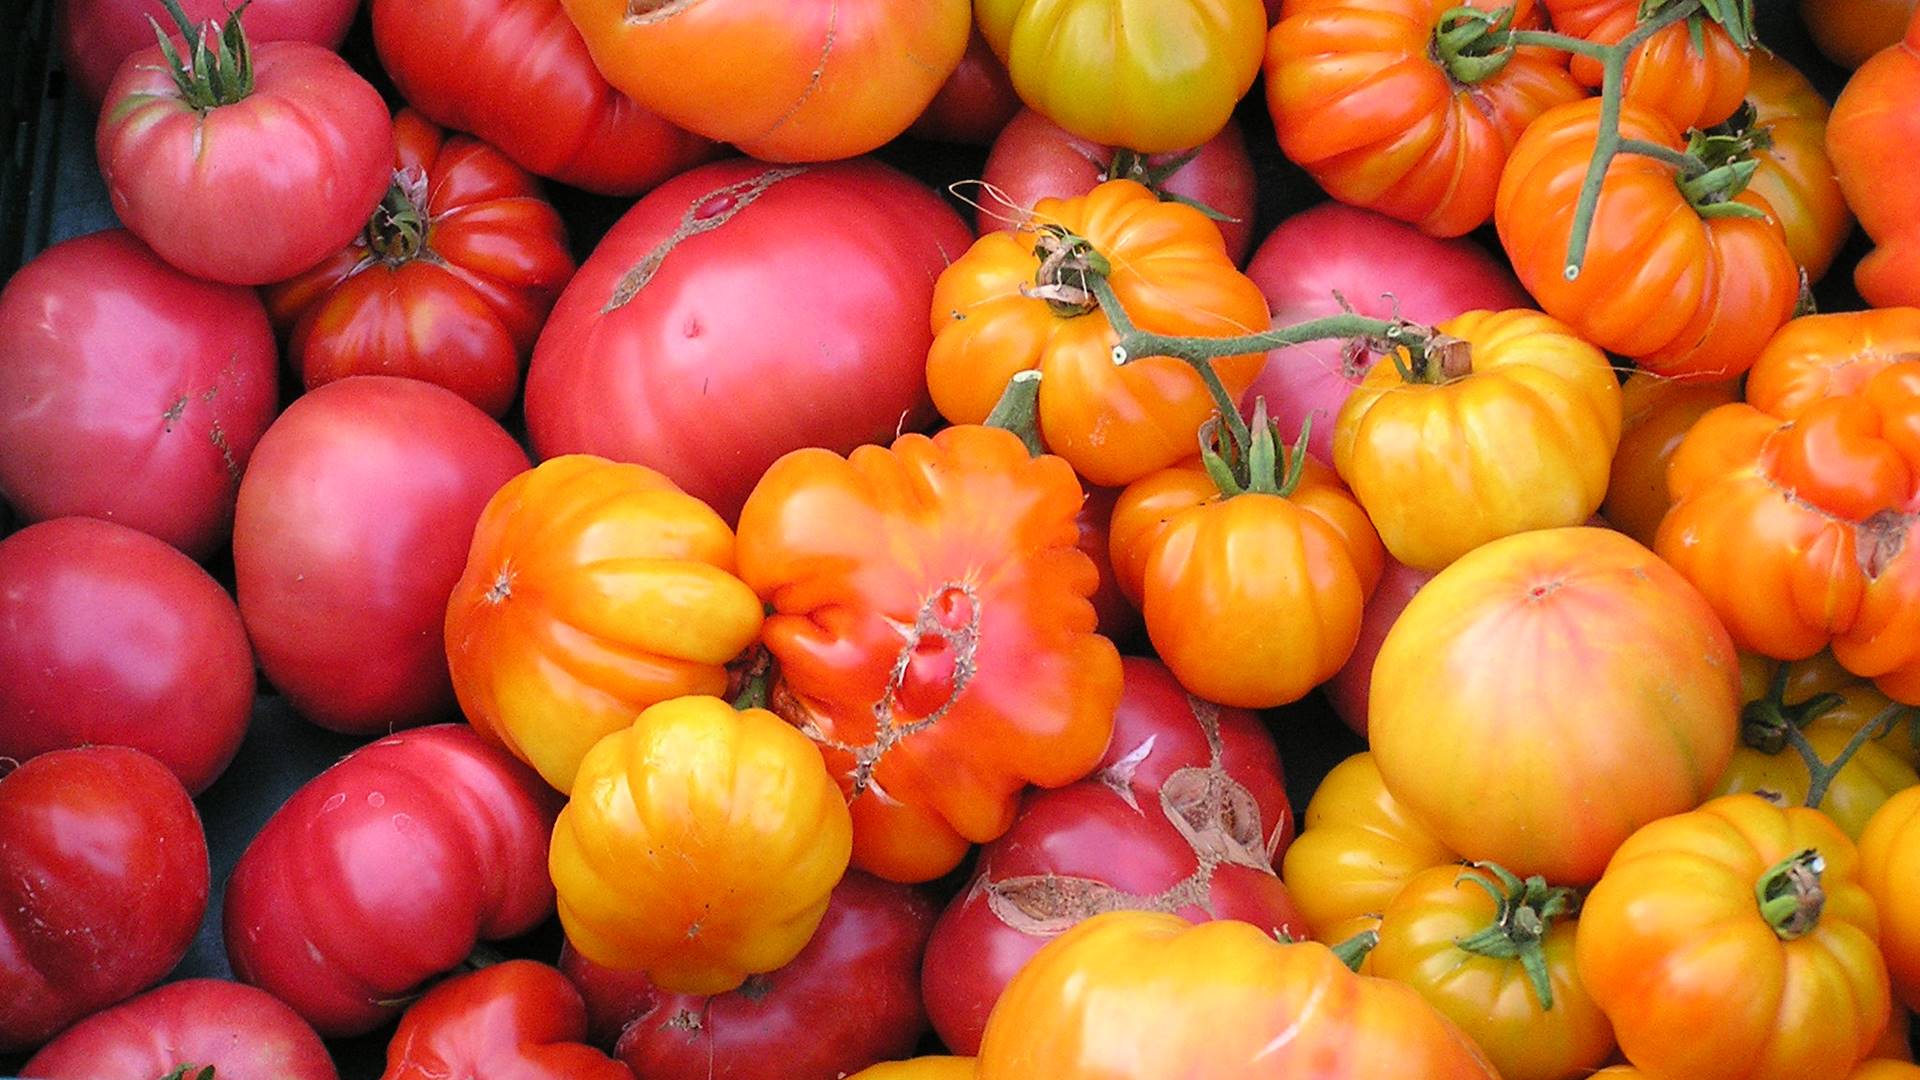 Ein Menge unterschiedlich geformter Tomaten in gelber, roter und orangener Farbe.